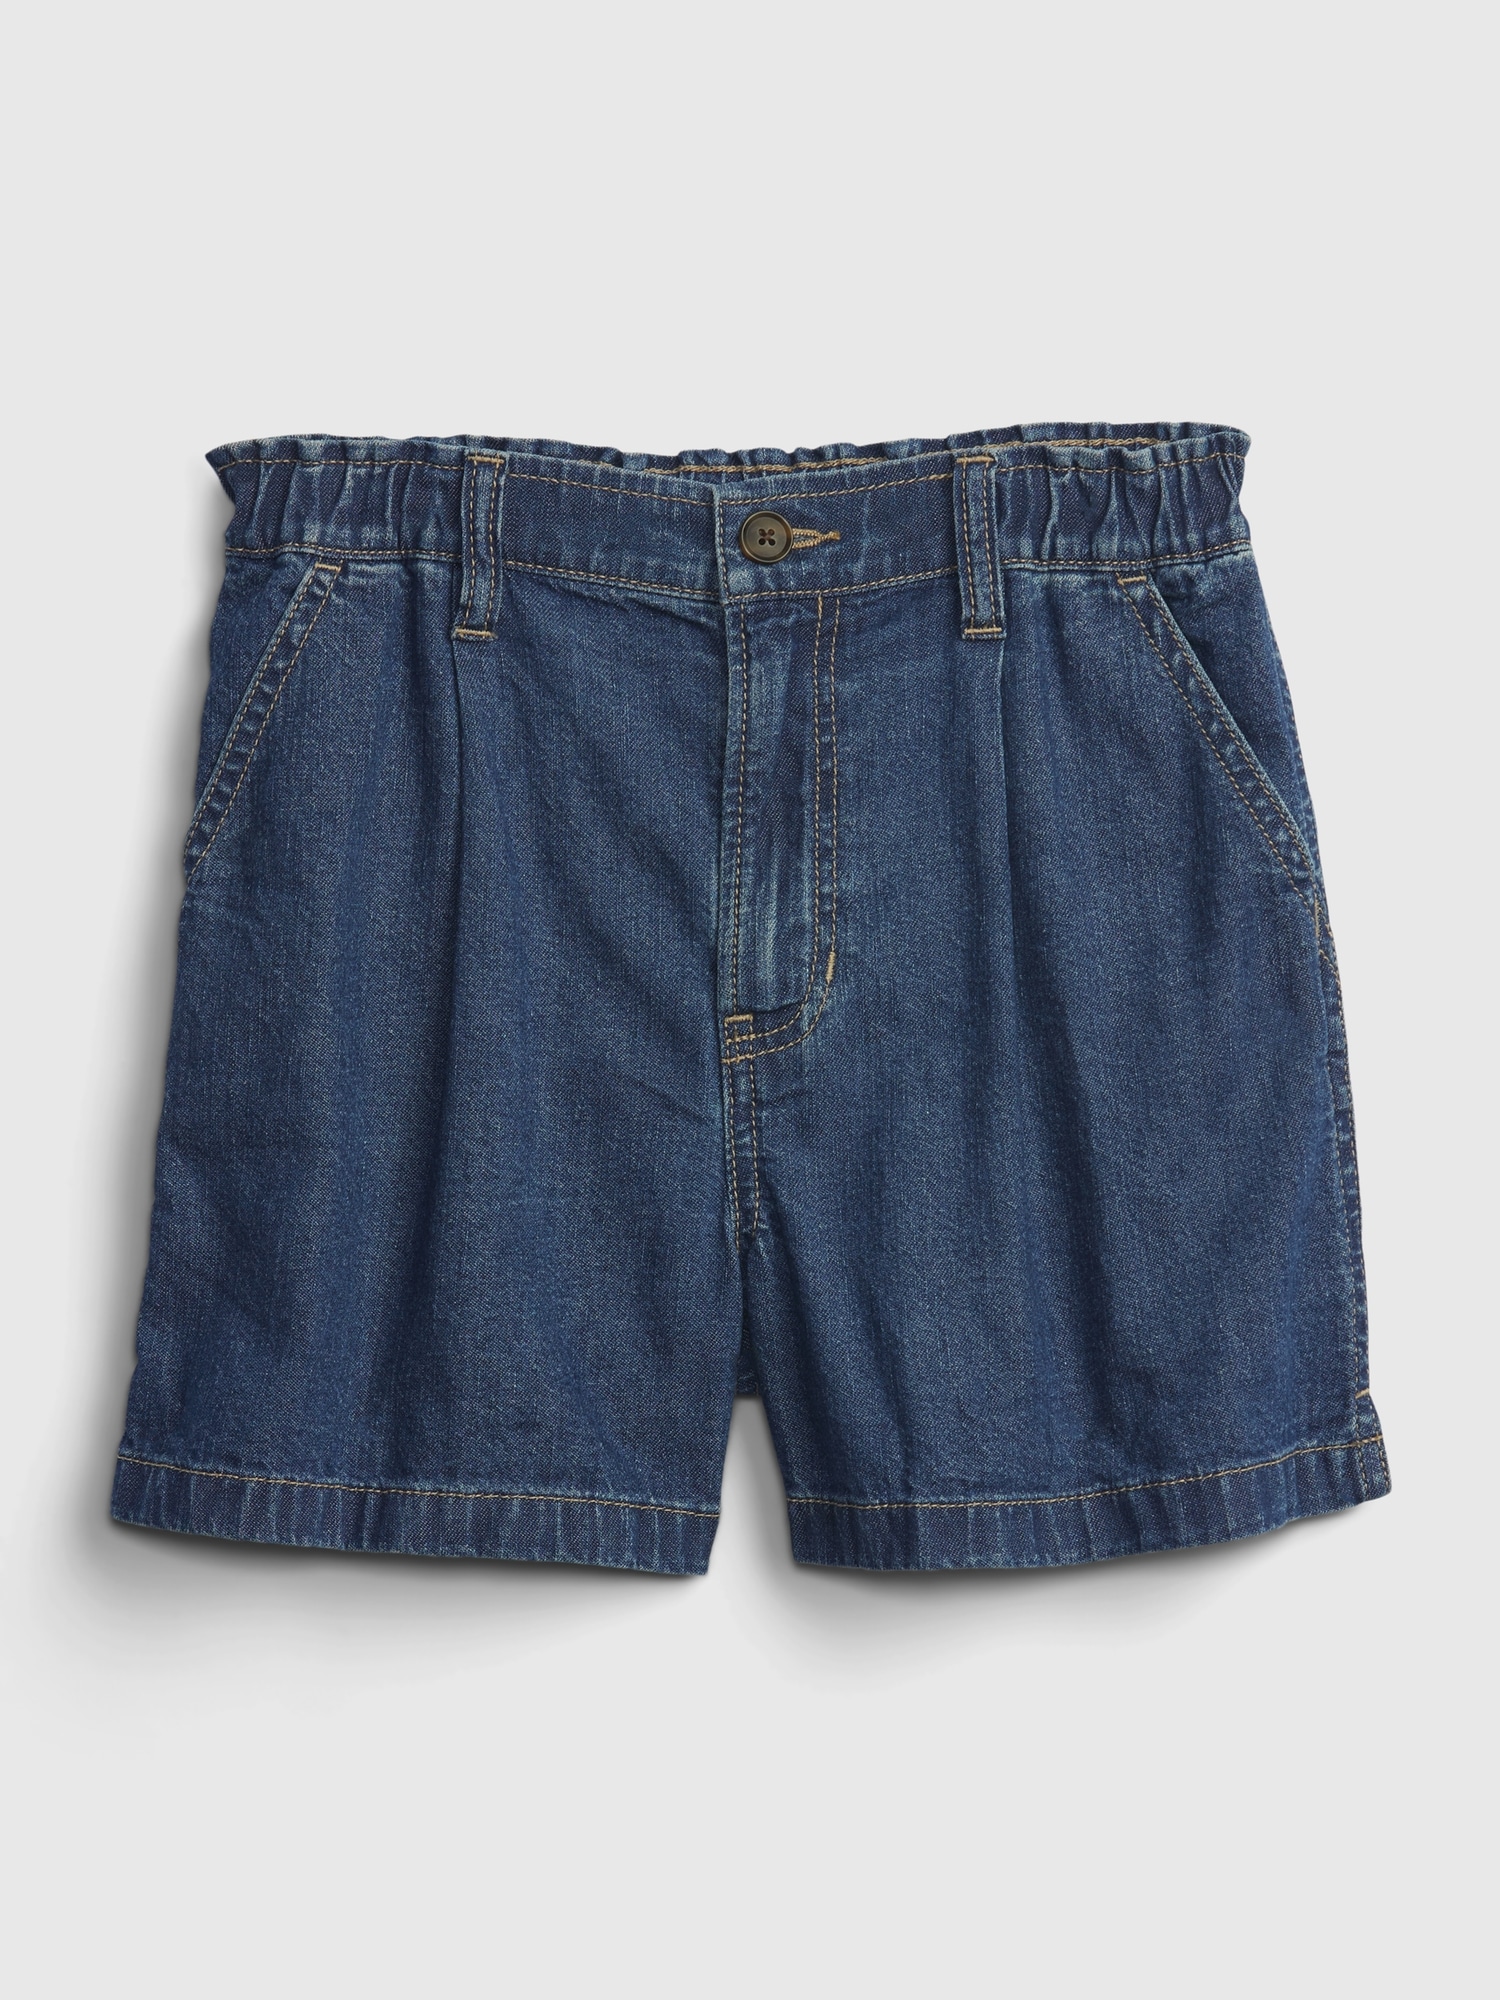 Kids Jeans Shorts | Gap